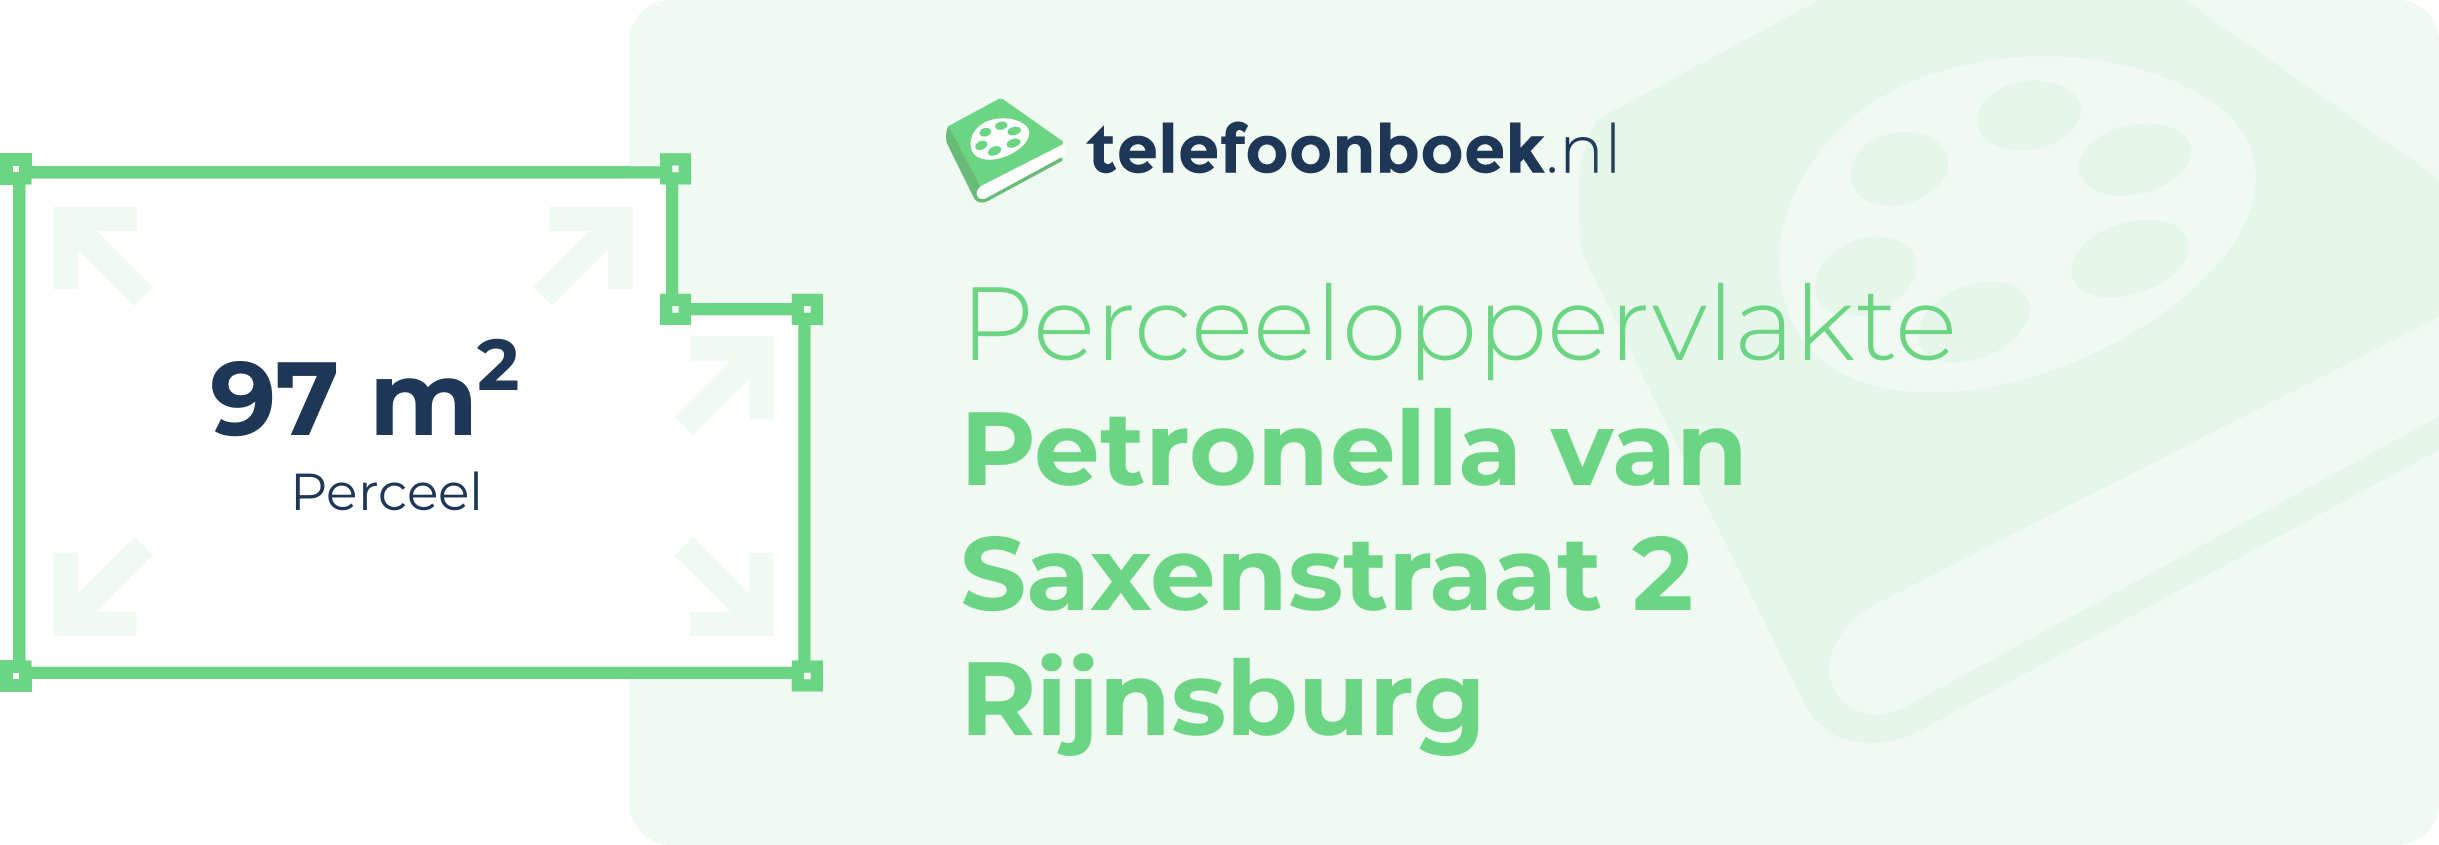 Perceeloppervlakte Petronella Van Saxenstraat 2 Rijnsburg